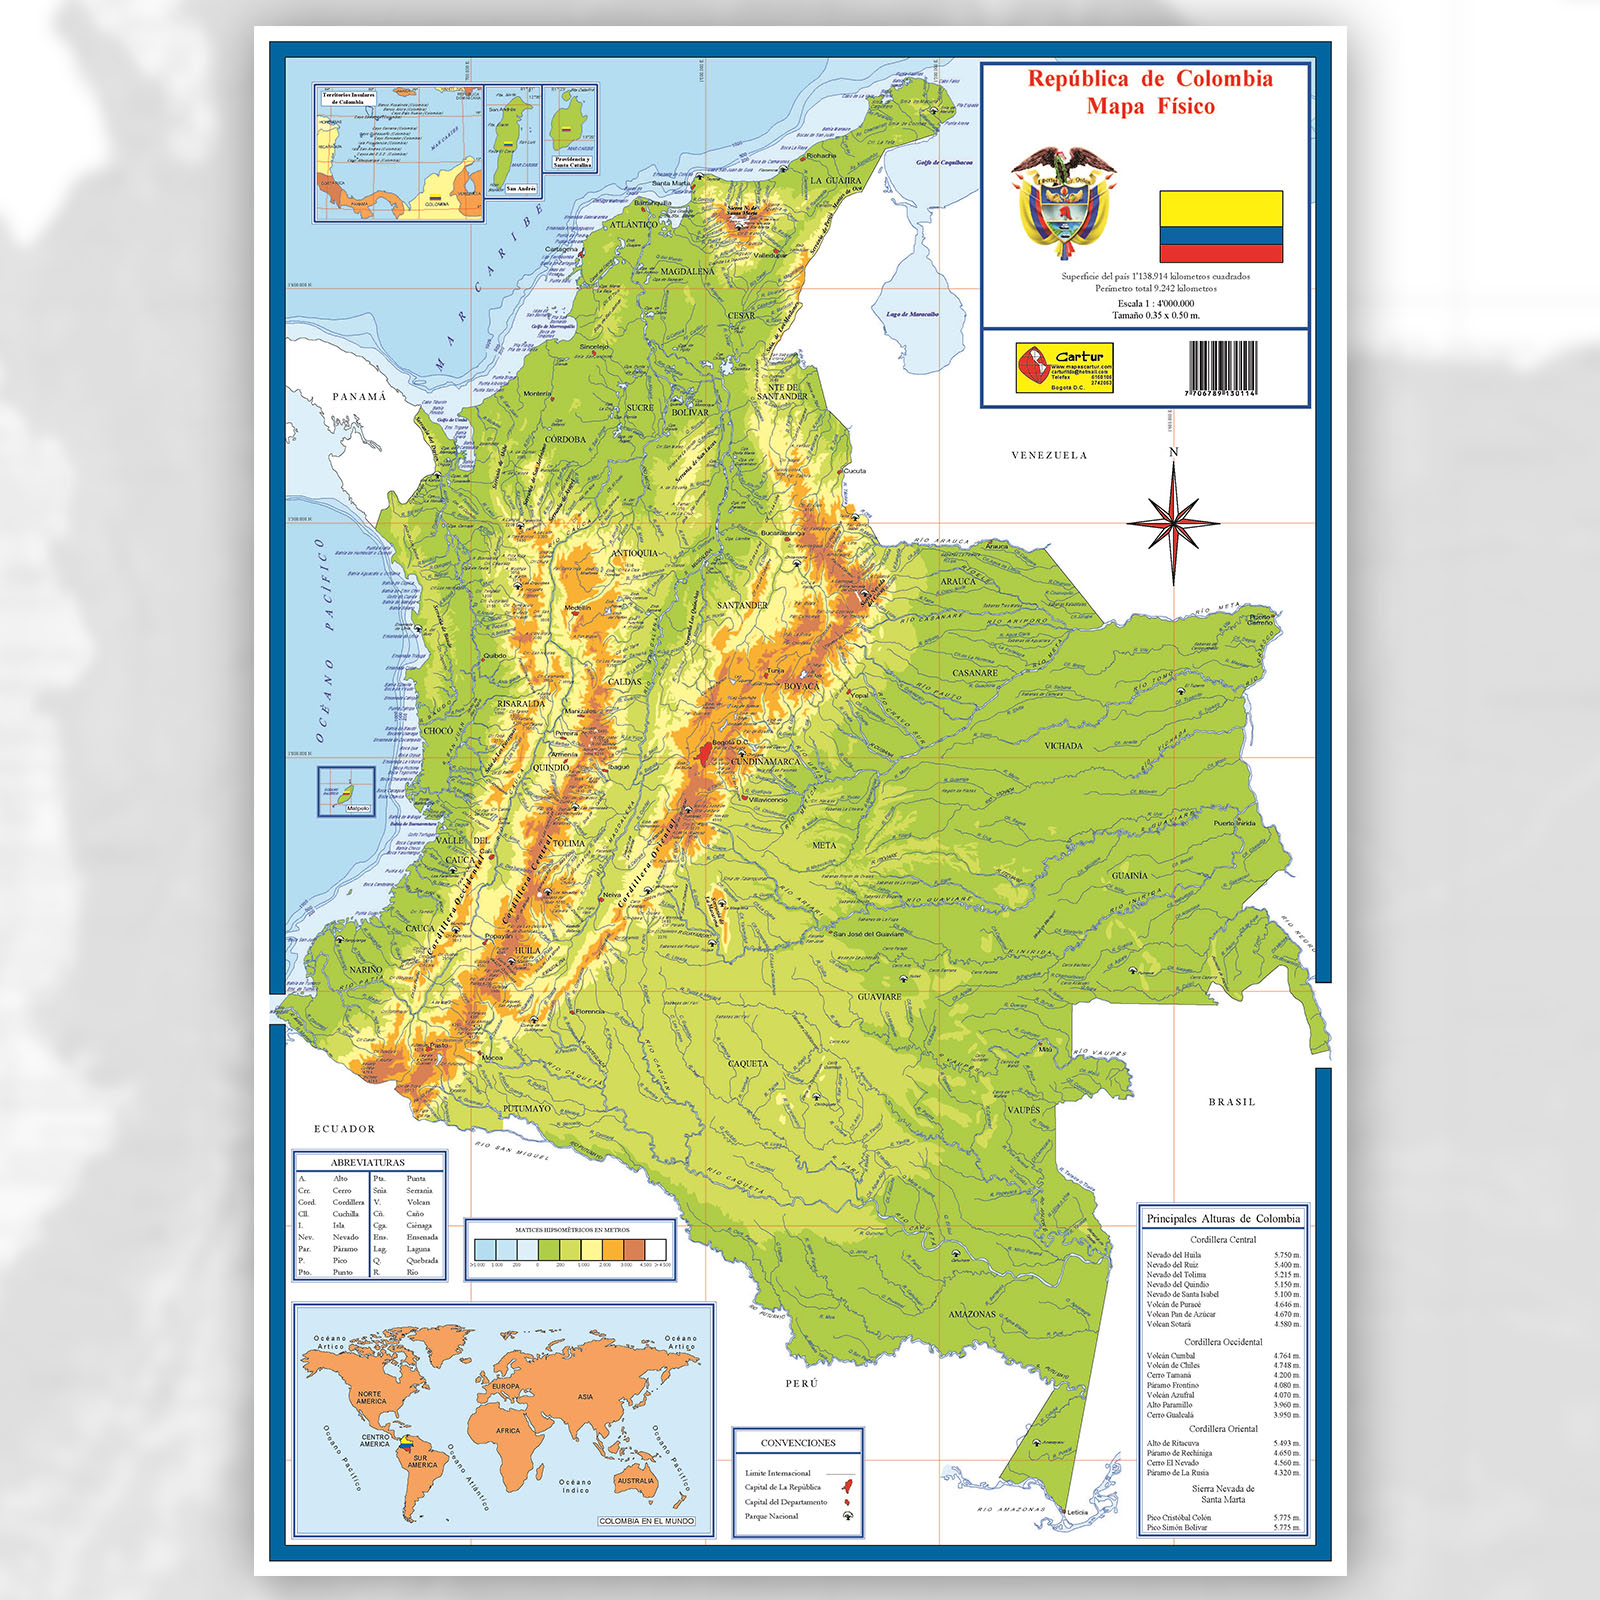 Mapa de Colombia con sus límites - Mapa Físico, Geográfico, Político